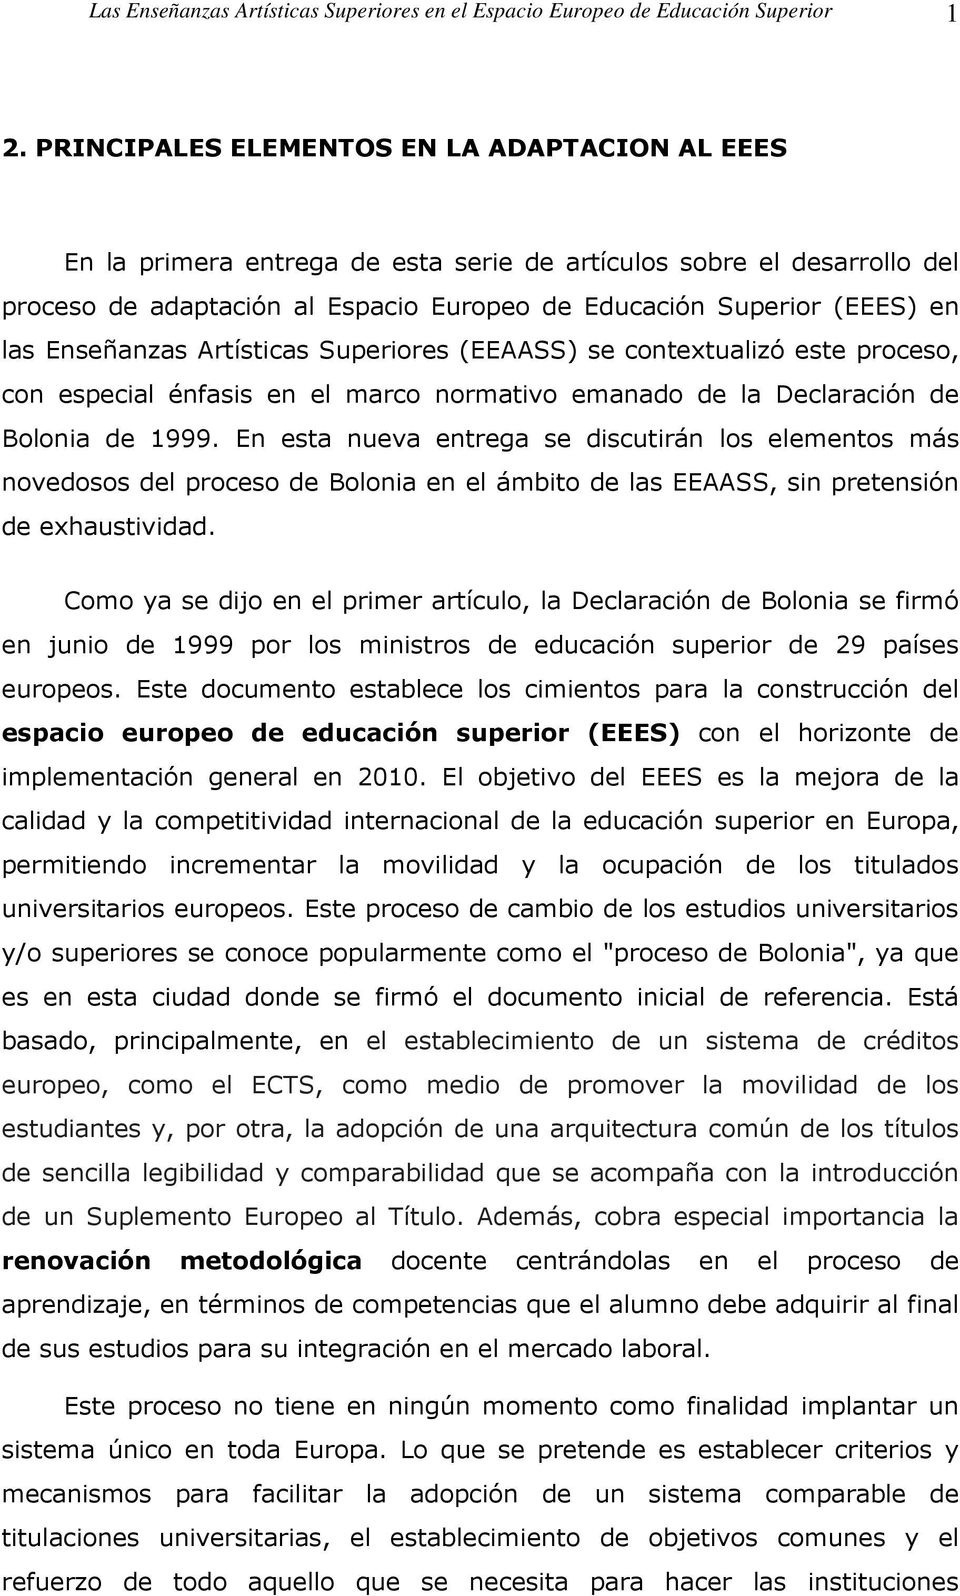 Enseñanzas Artísticas Superiores (EEAASS) se contextualizó este proceso, con especial énfasis en el marco normativo emanado de la Declaración de Bolonia de 1999.